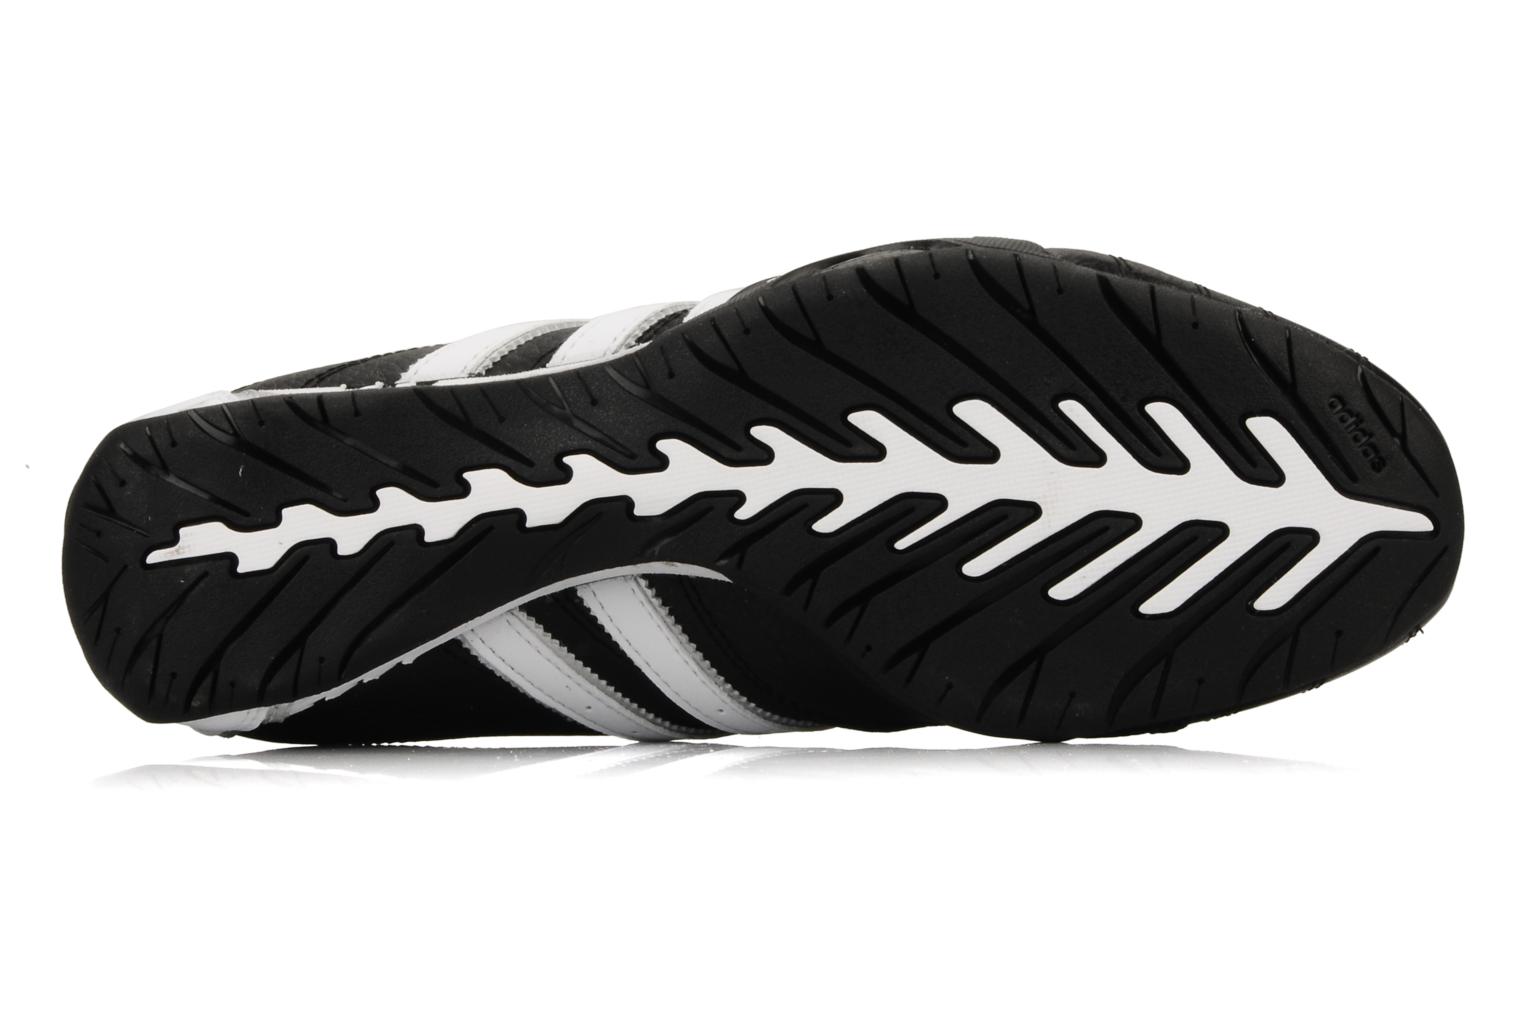 Adidas Originals Adi Racer Low (Black) - Trainers chez Sarenza (94446)